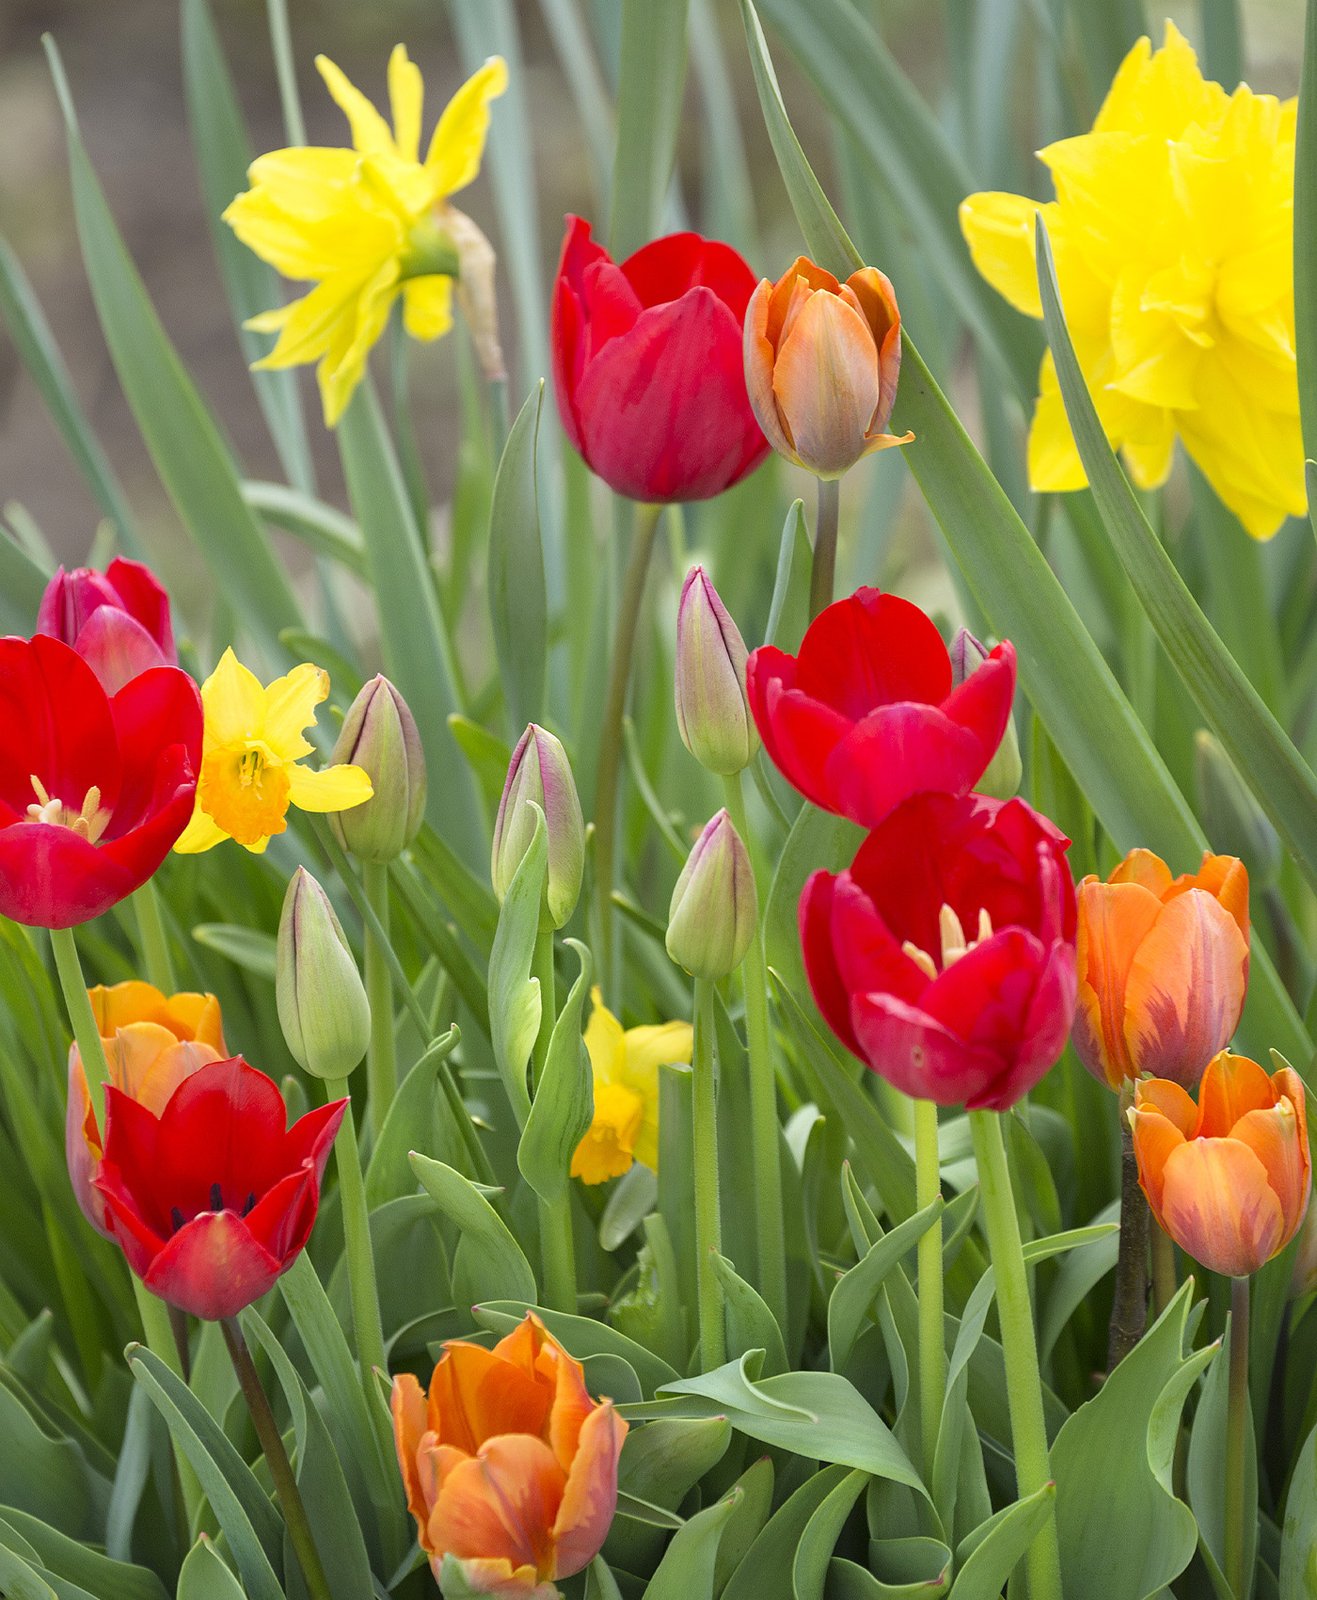 Des tulipes jaunes, rouges et oranges dans un jardin